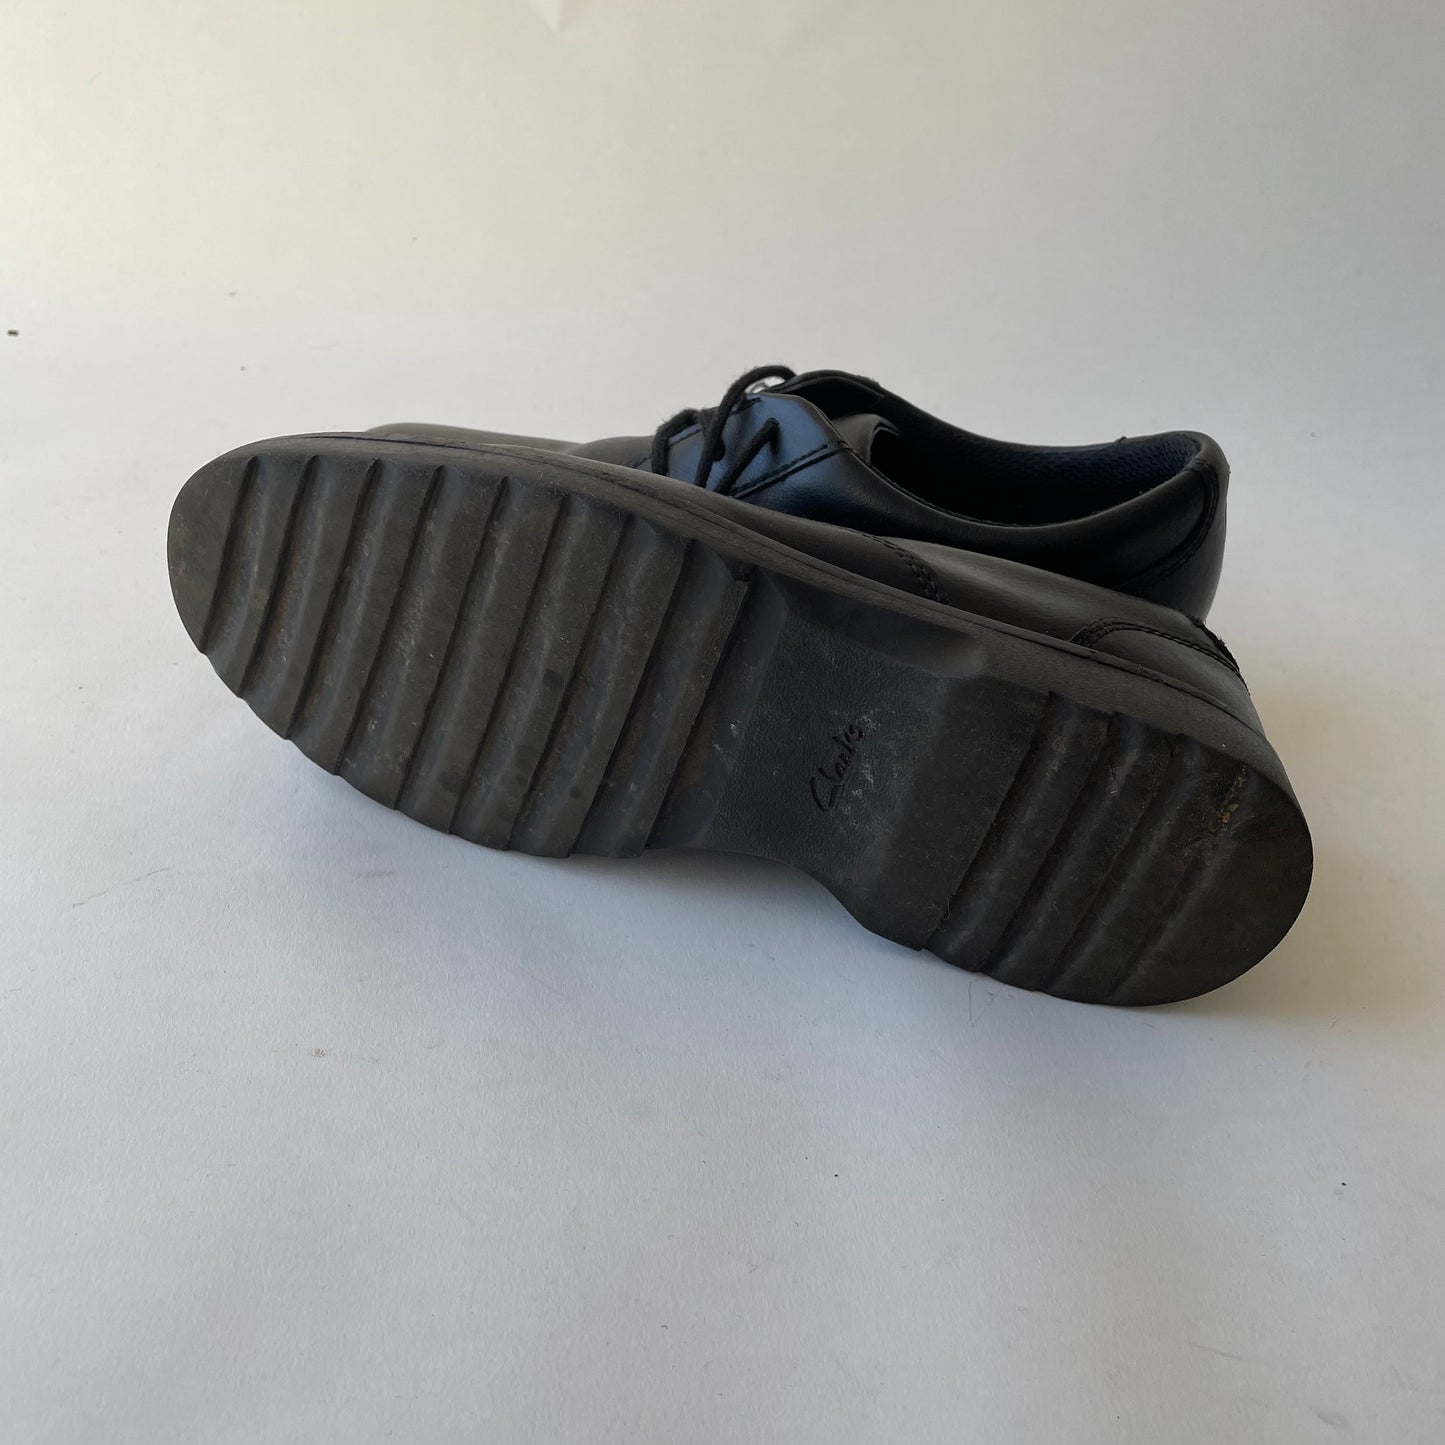 Clarks Black Shoes Shoe Size 3F